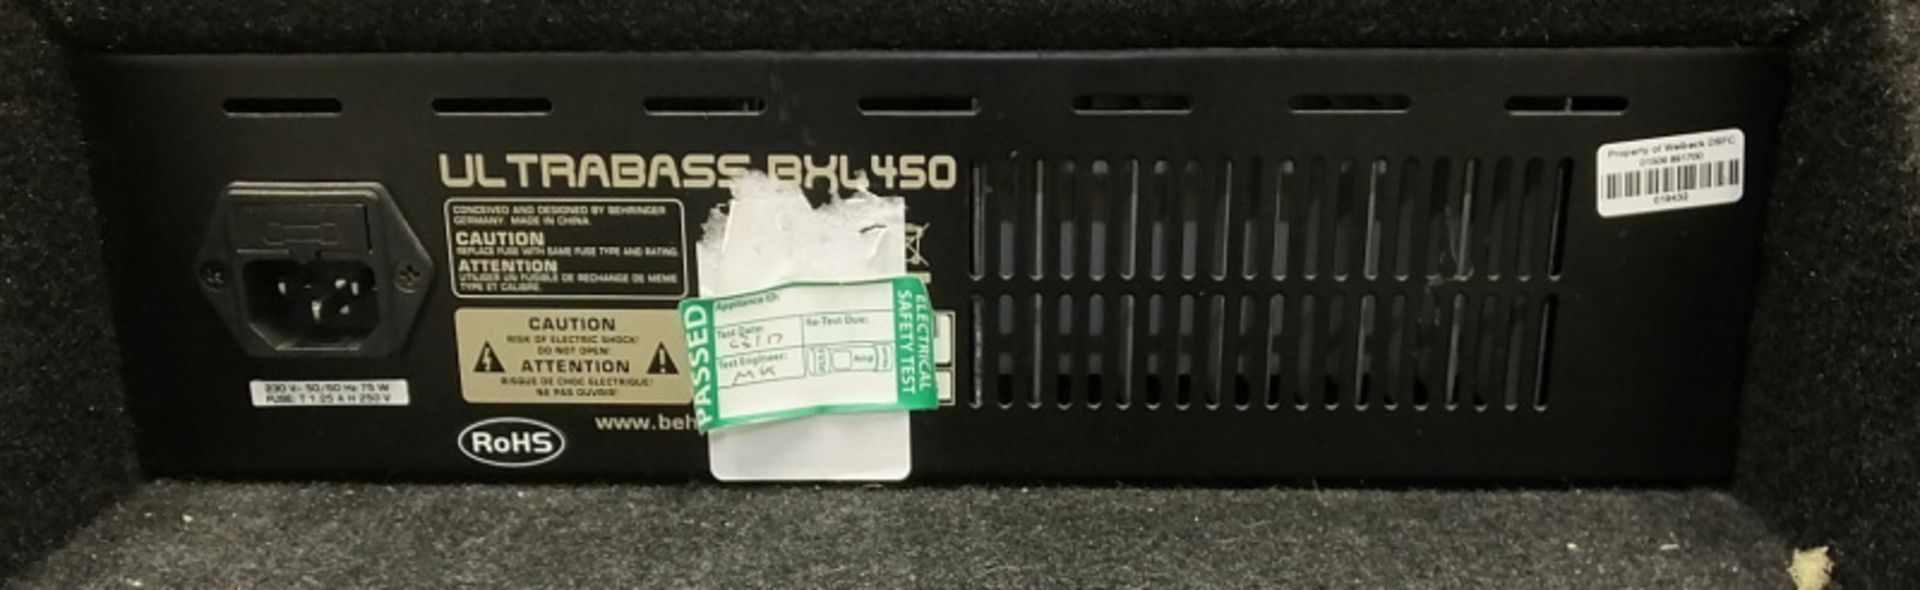 Behringer BXL450 Bass Workstation Amplifier - 45W - 2 Channel - Image 8 of 8